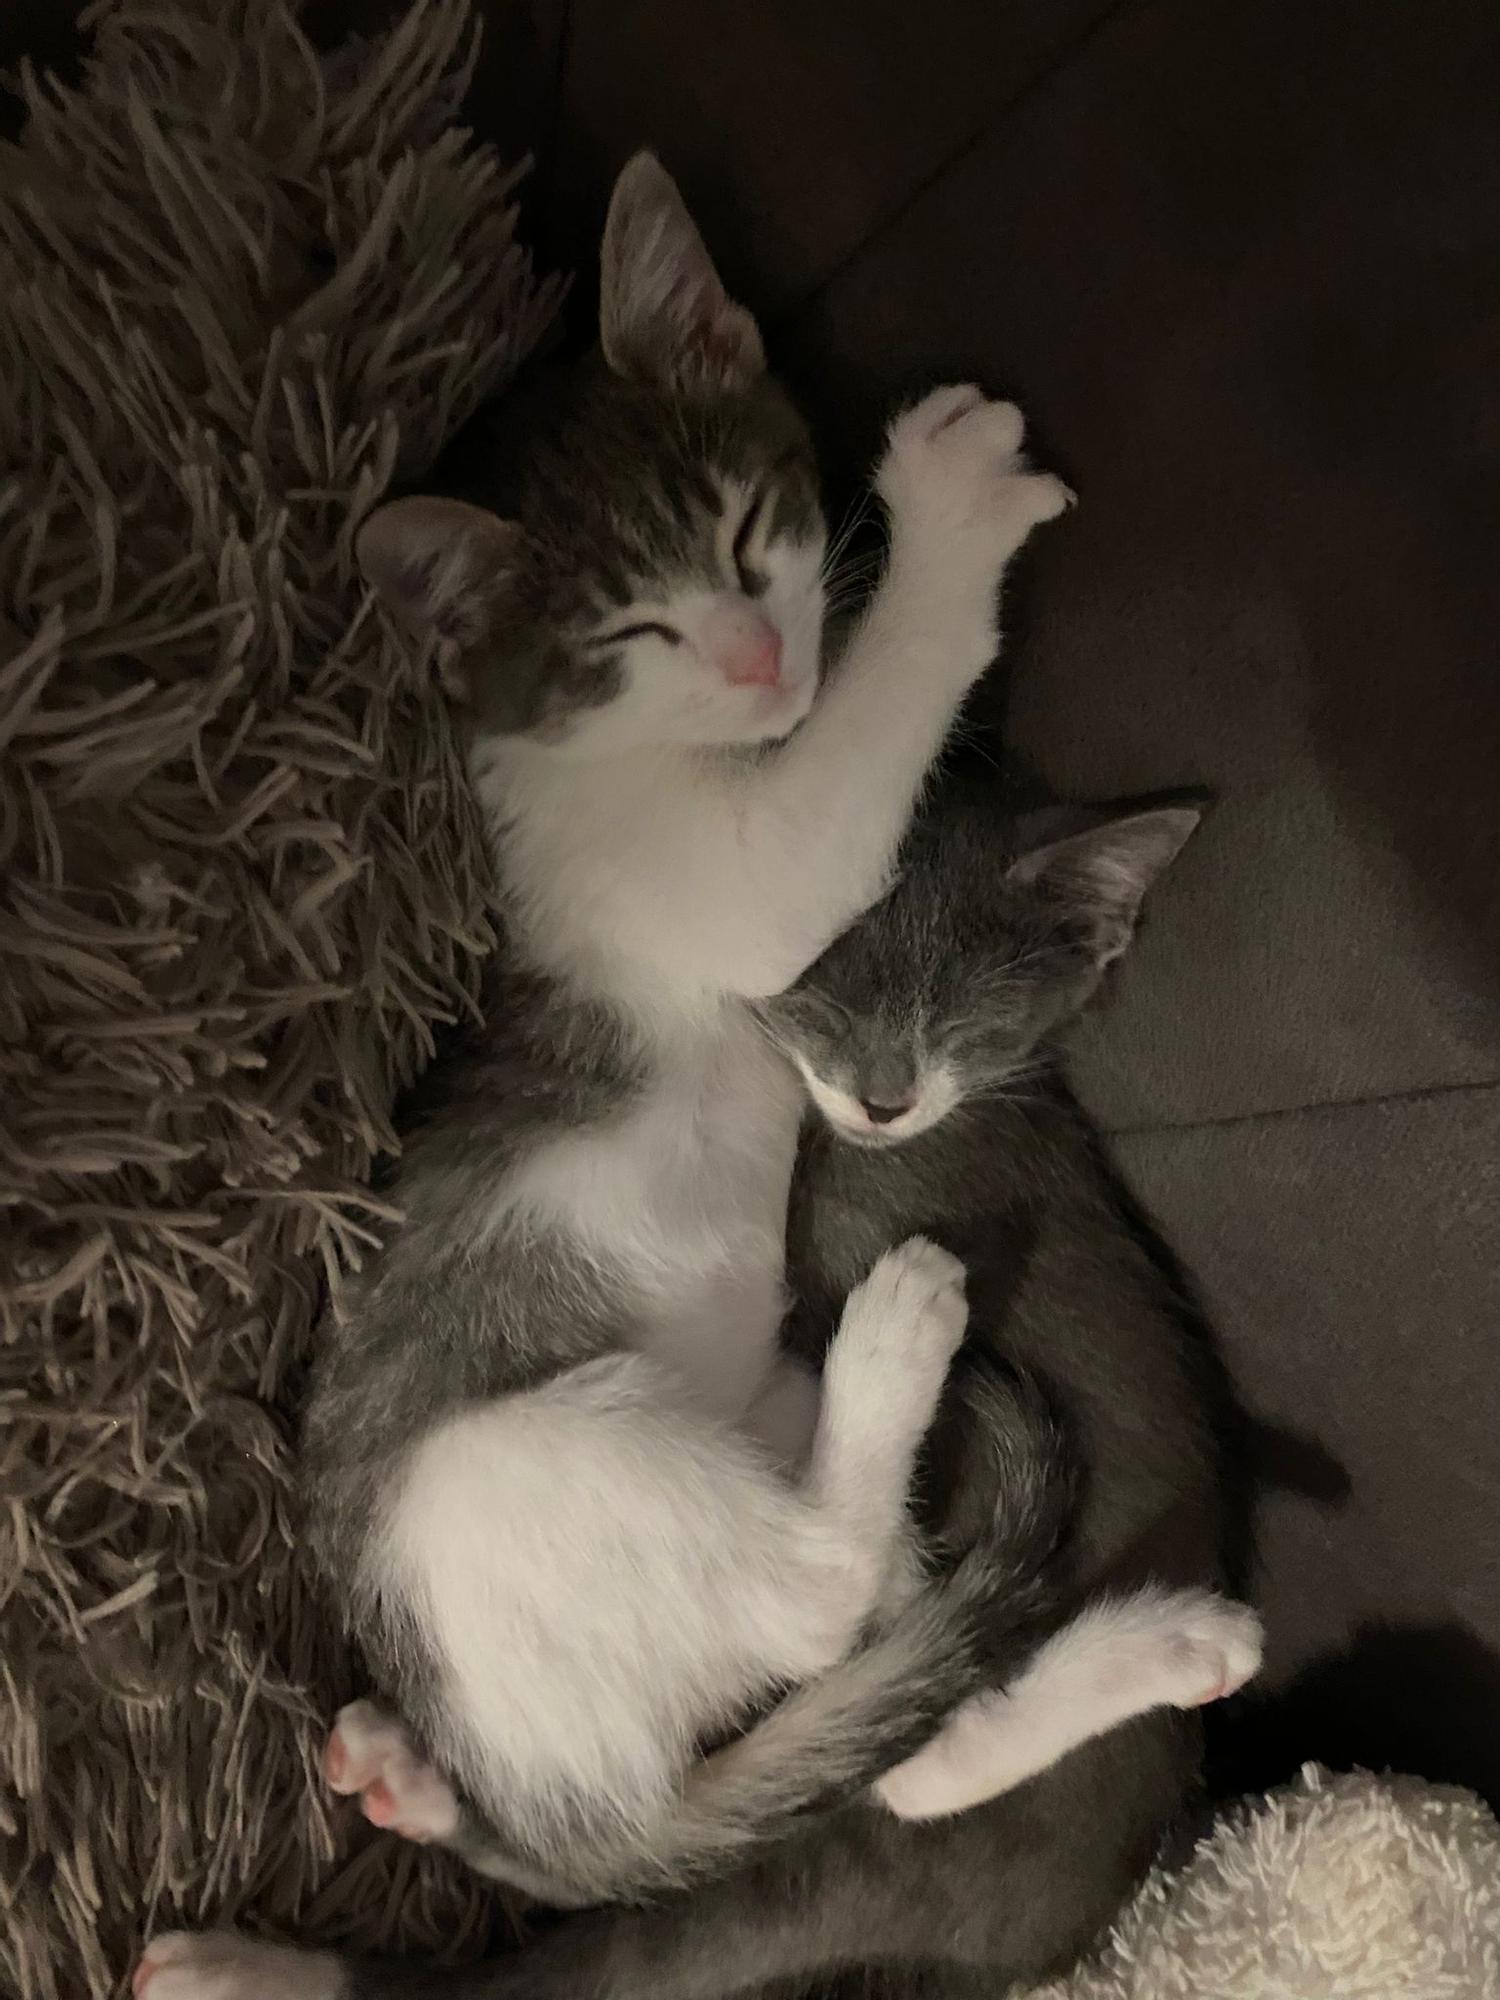 Zwei Kätzchen, die Mersch gerne ins neue haus mitnehmen würde.